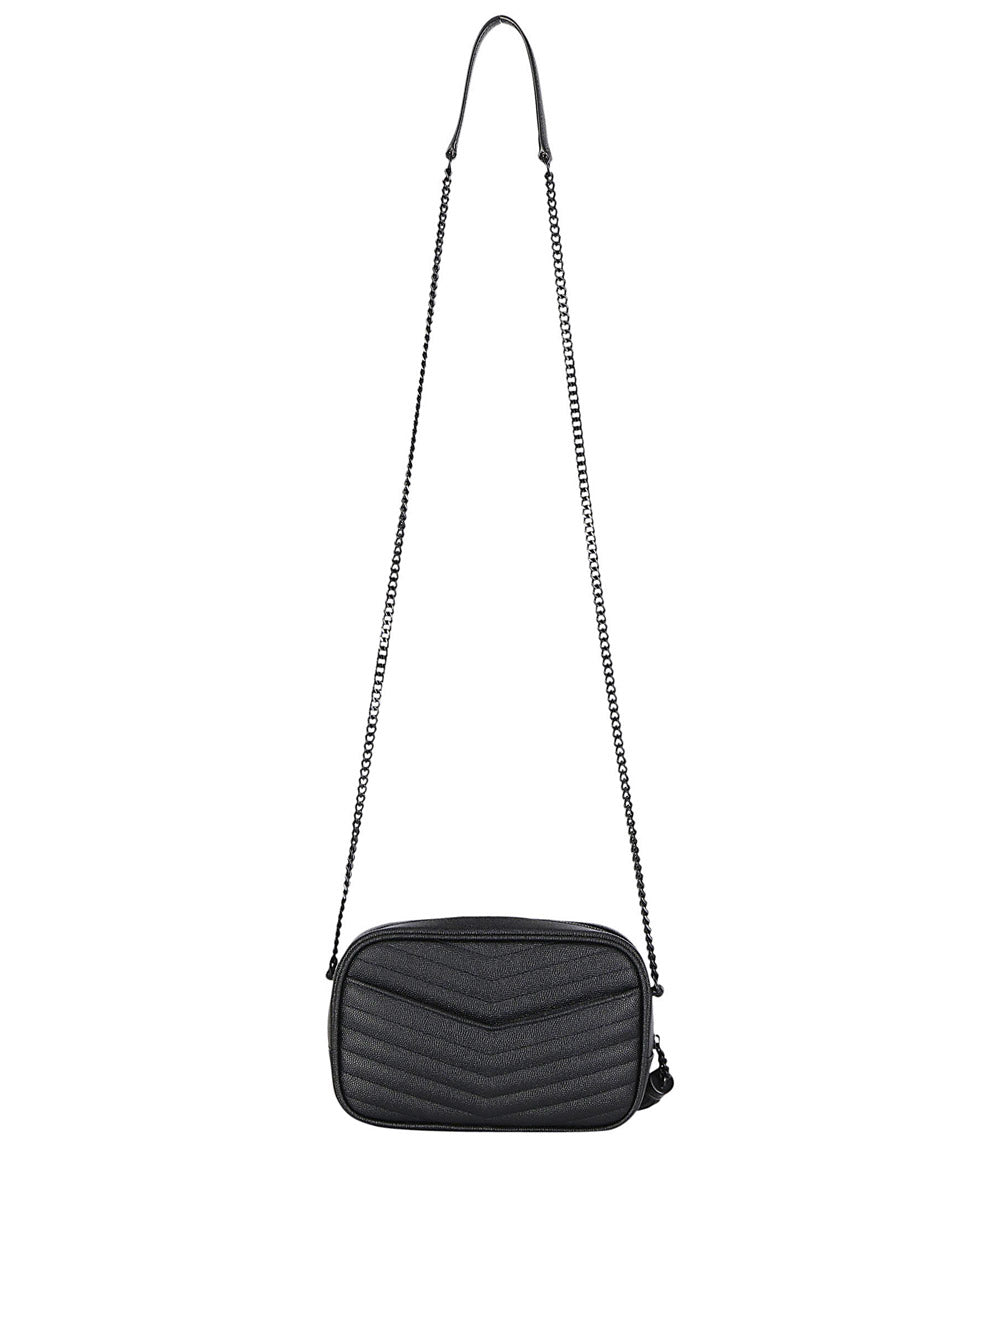 Saint Laurent - Lou Mini Grain de Poudre Embossed Leather Quilted Crossbody Bag